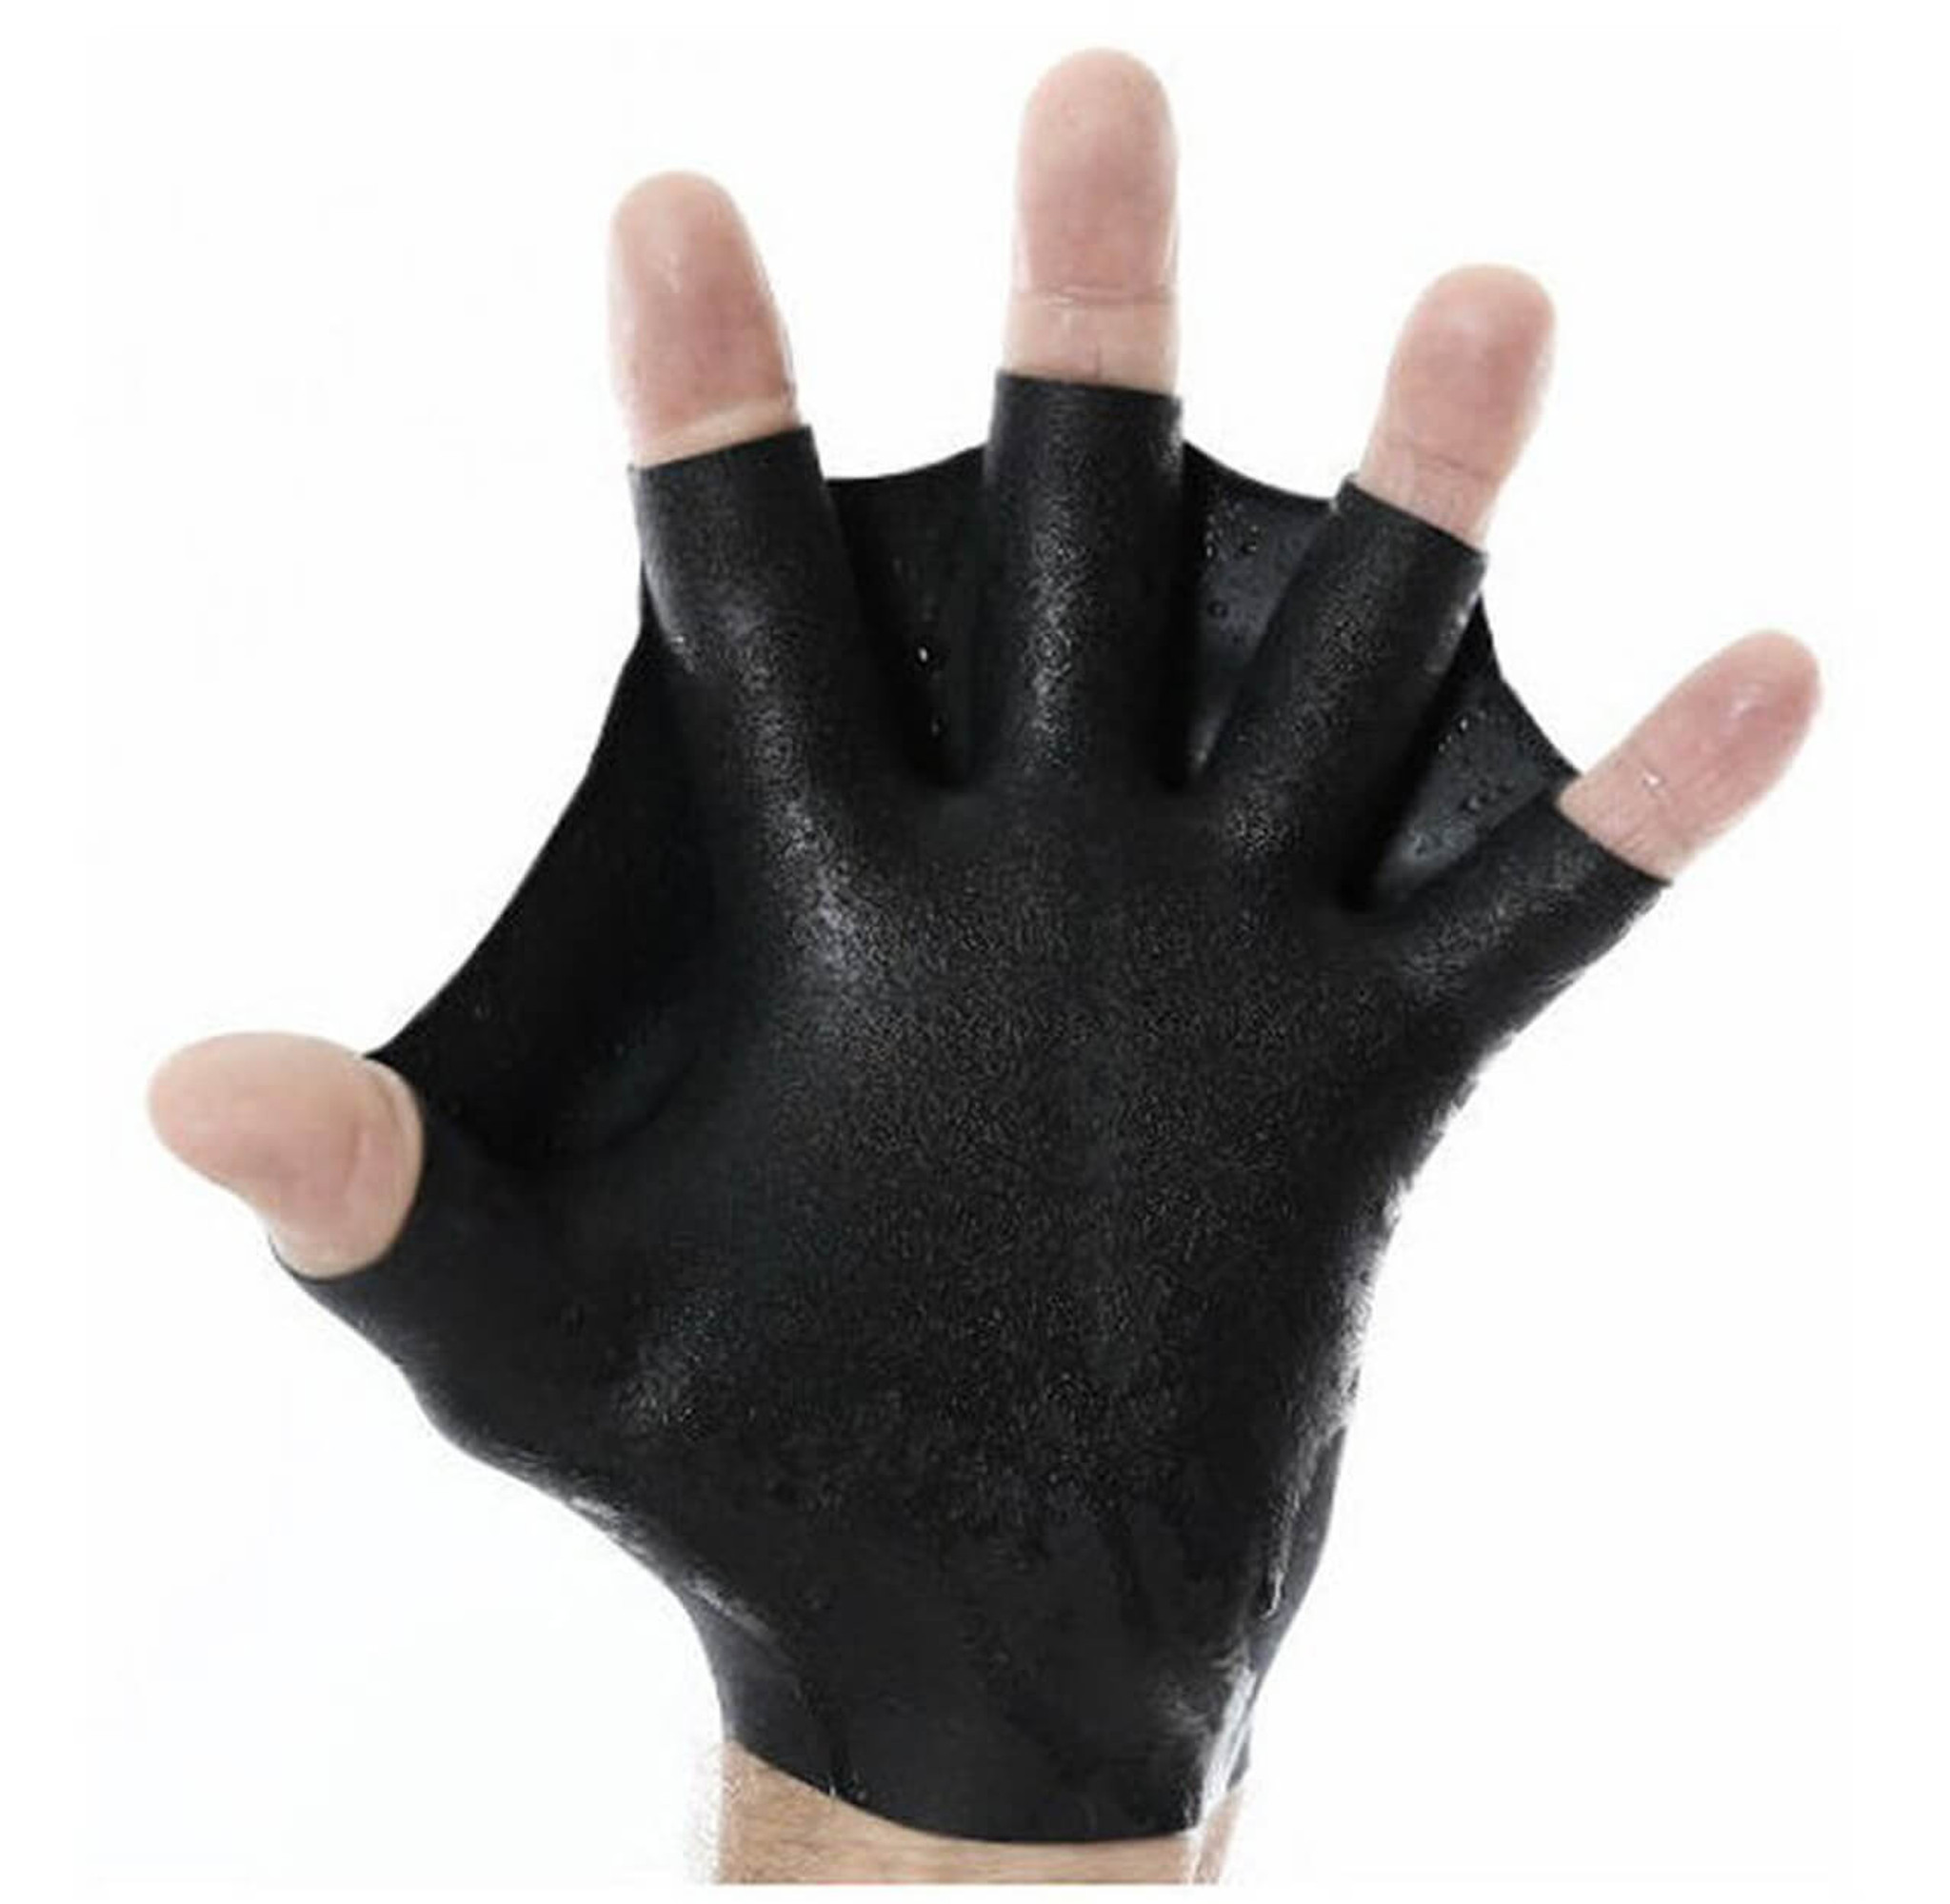 Darkfin Durafin Gloves